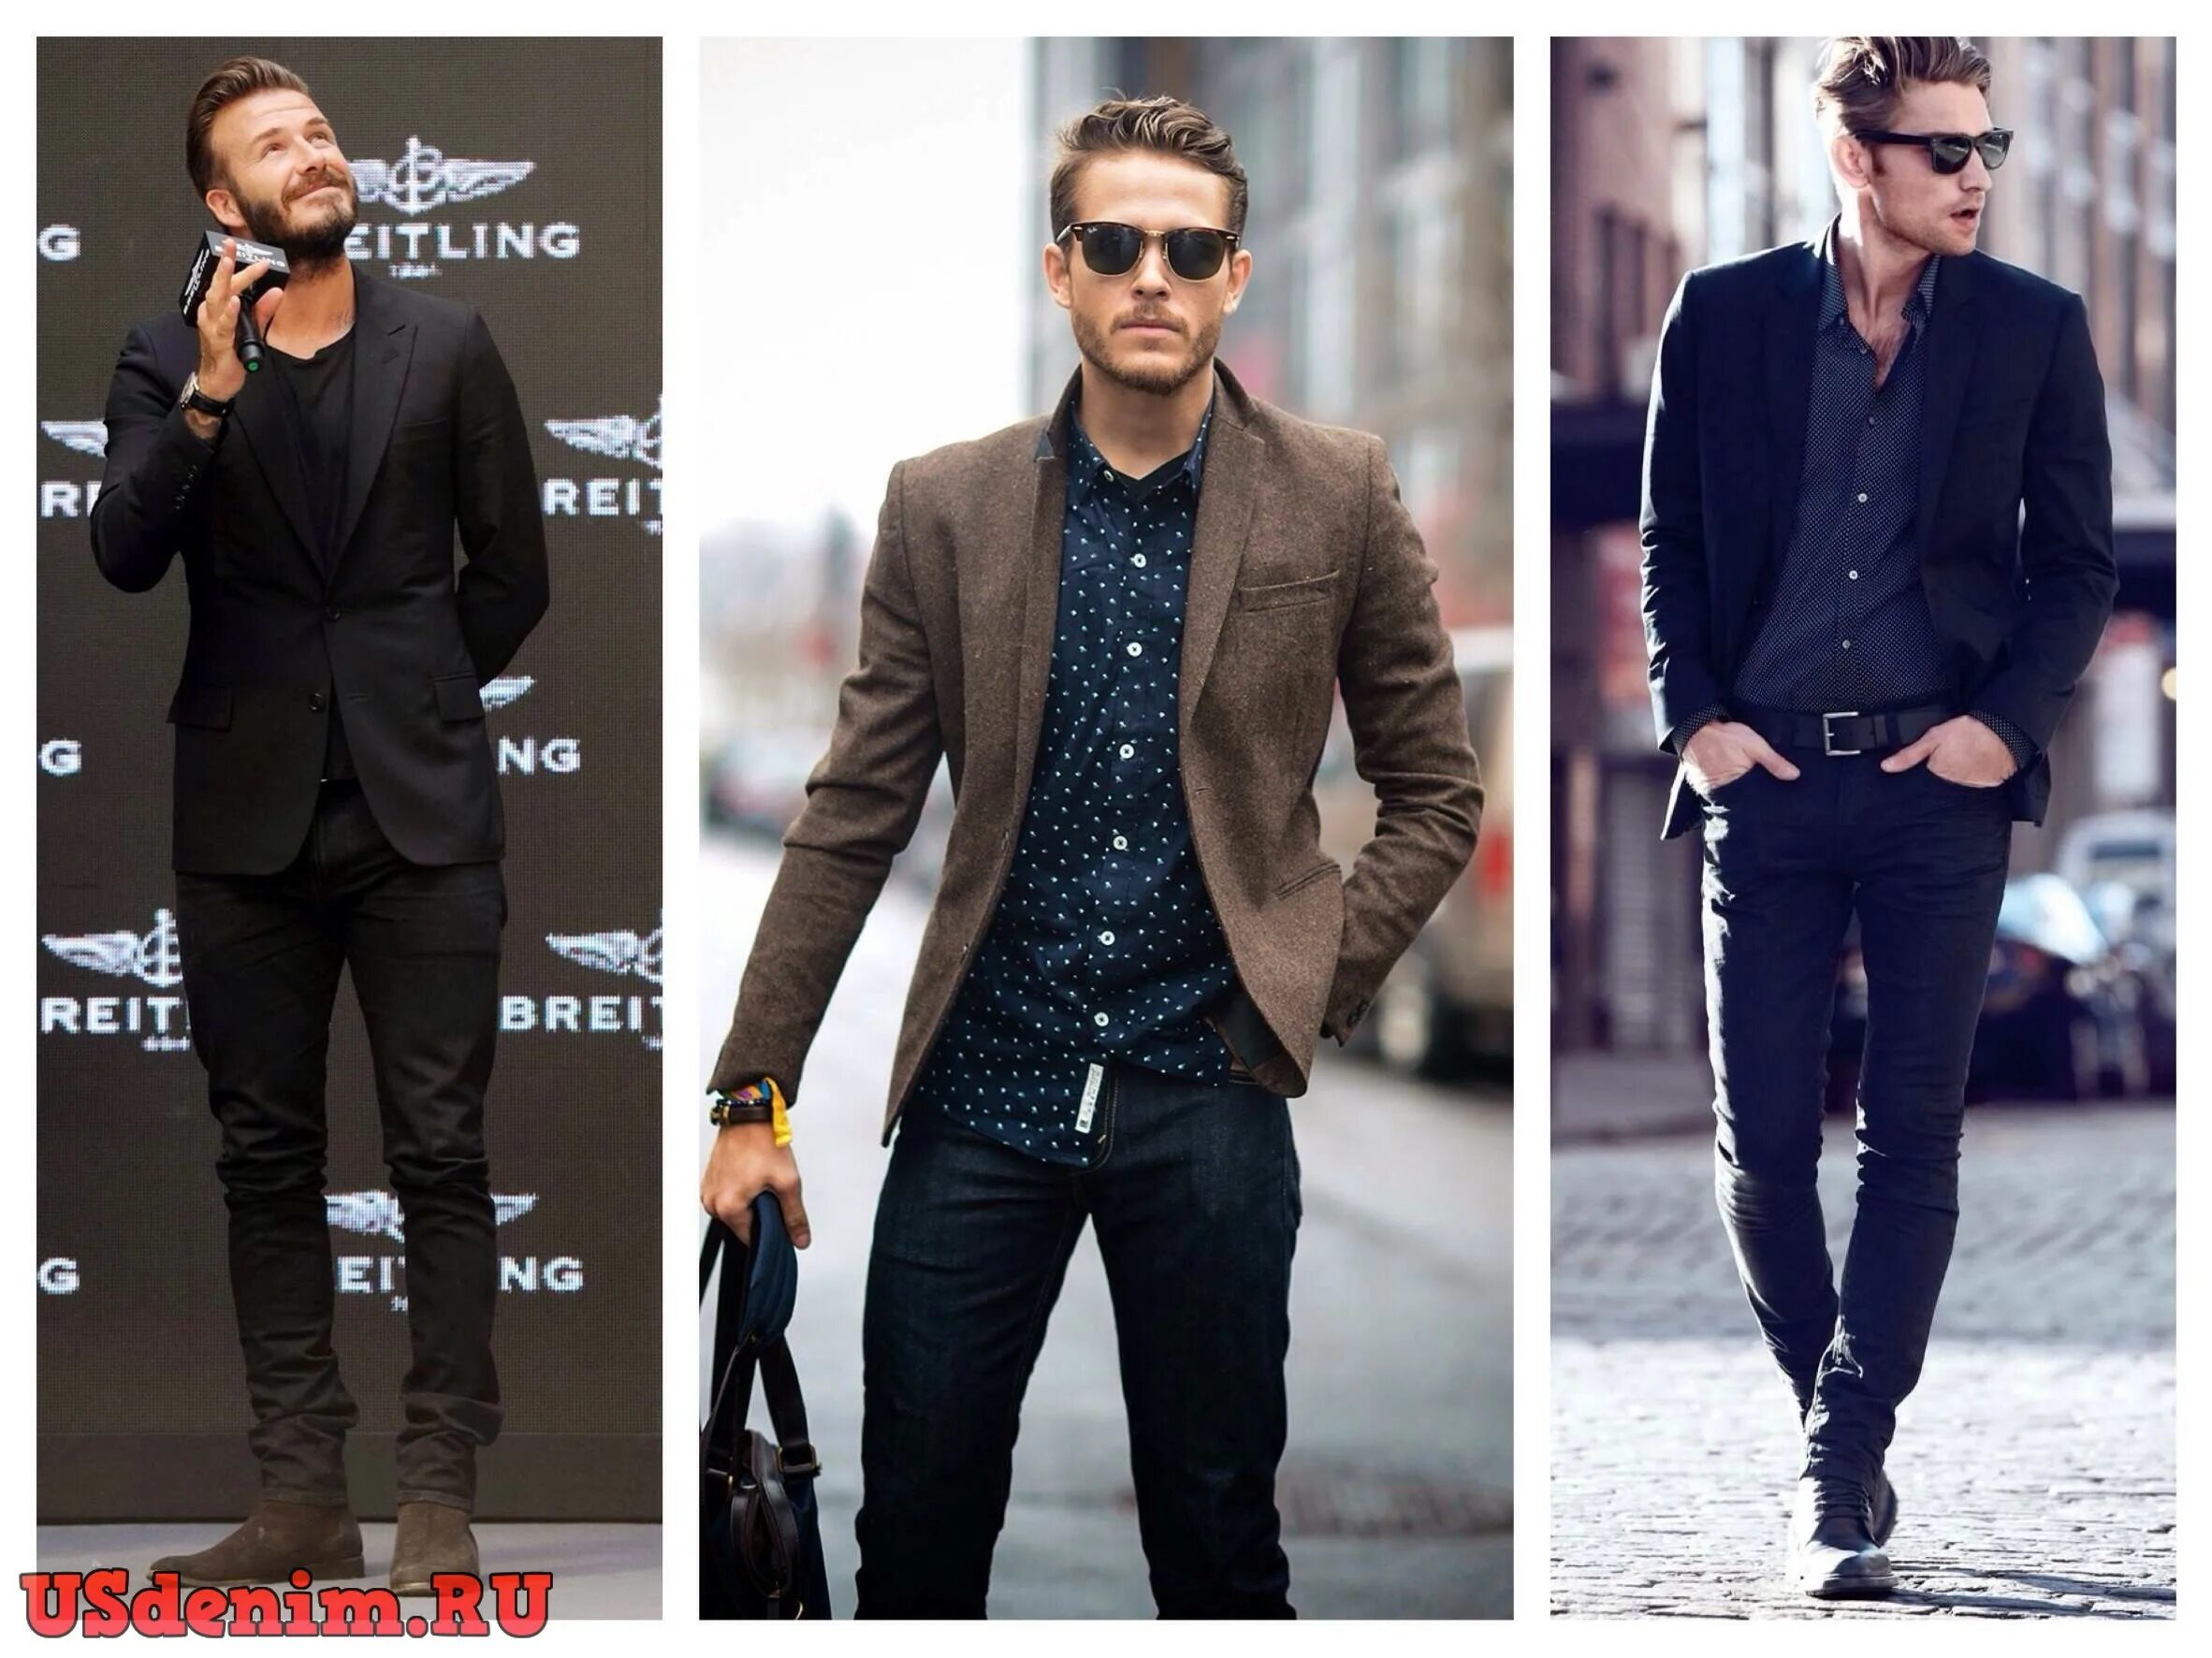 Мужской стиль. Стиль одежды мужской. Мужской стиль одежды повседневный. Строгий стиль одежды для мужчин. Названия модных мужских